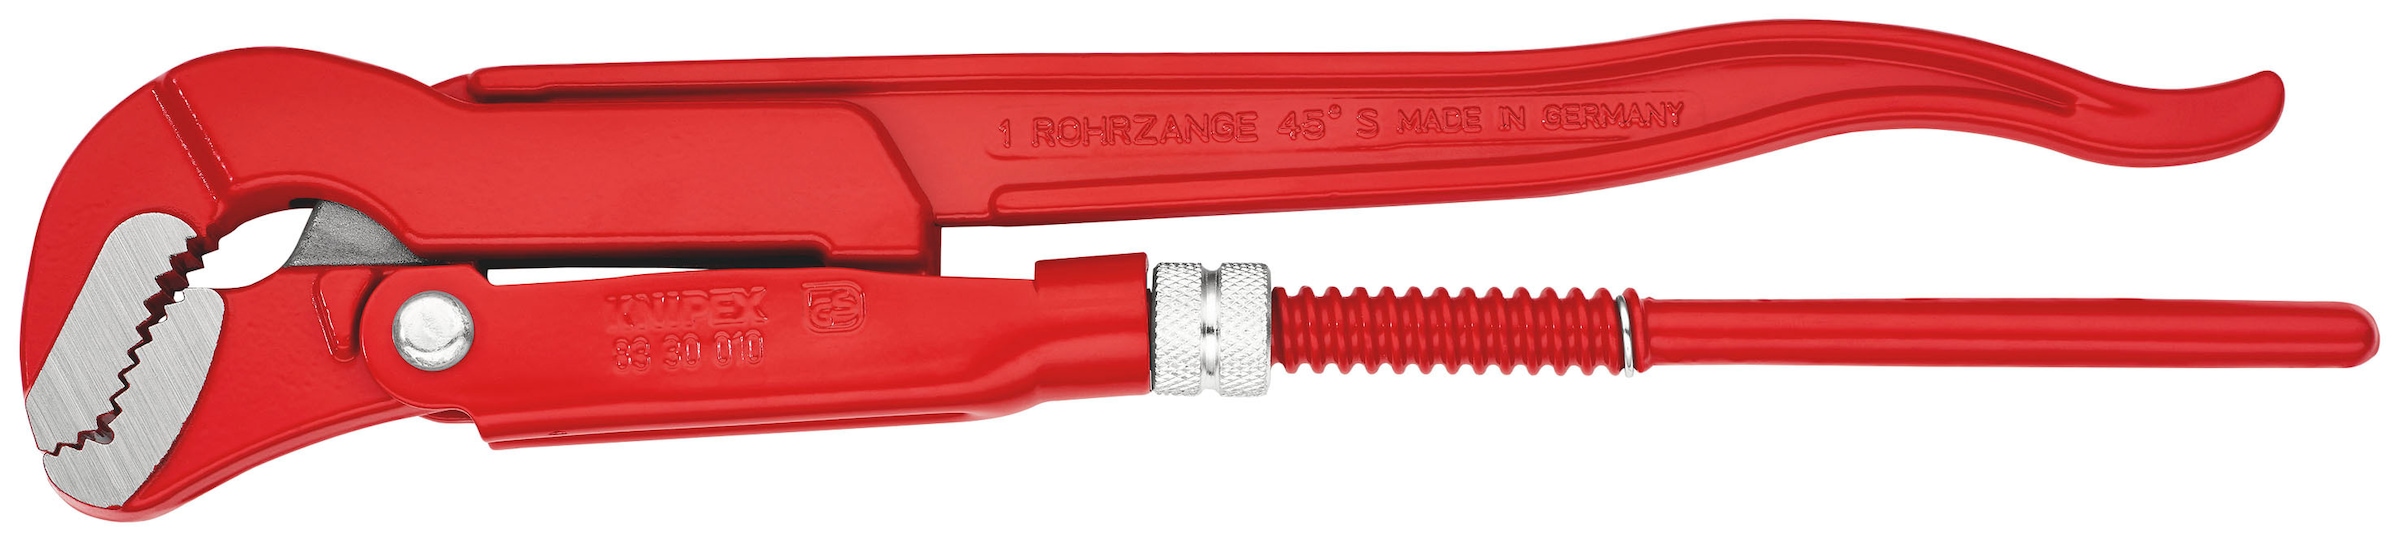 Knipex Rohrzange »83 30 010 S-Maul«, (1 tlg.), rot pulverbeschichtet 320 mm